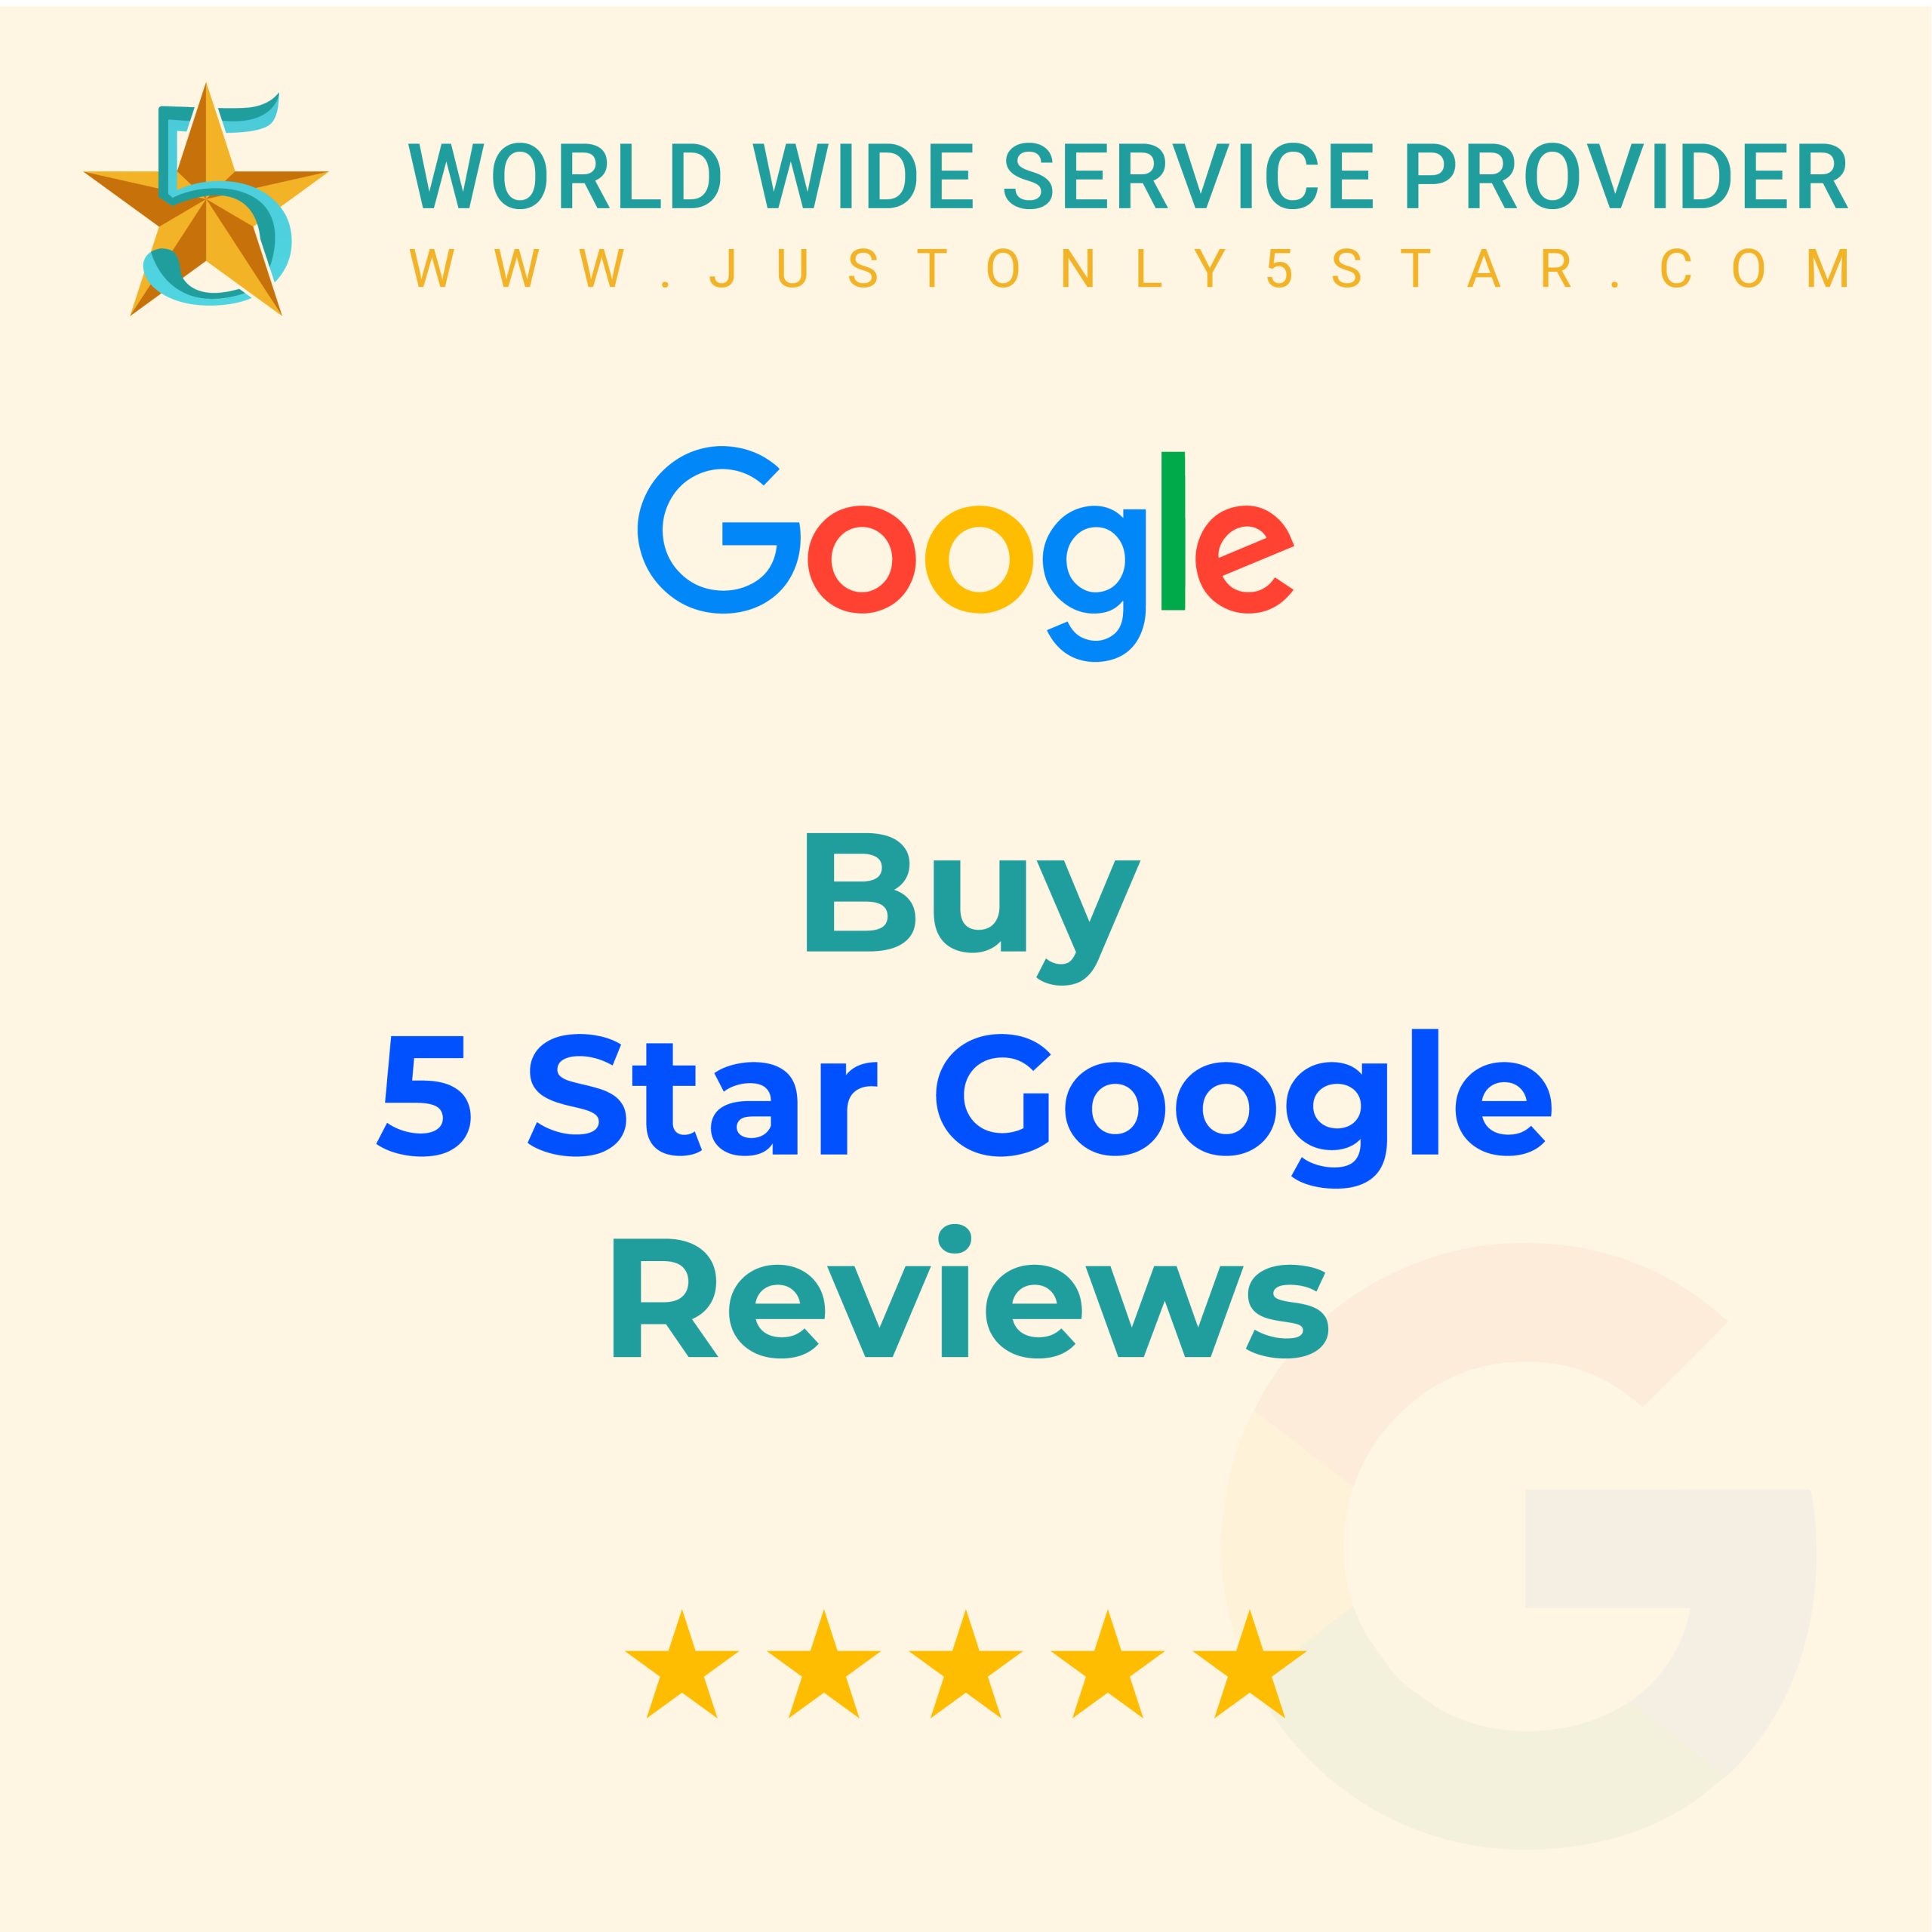 Buy 5 Star Google Reviews - 100% Real & Safe Reviews...